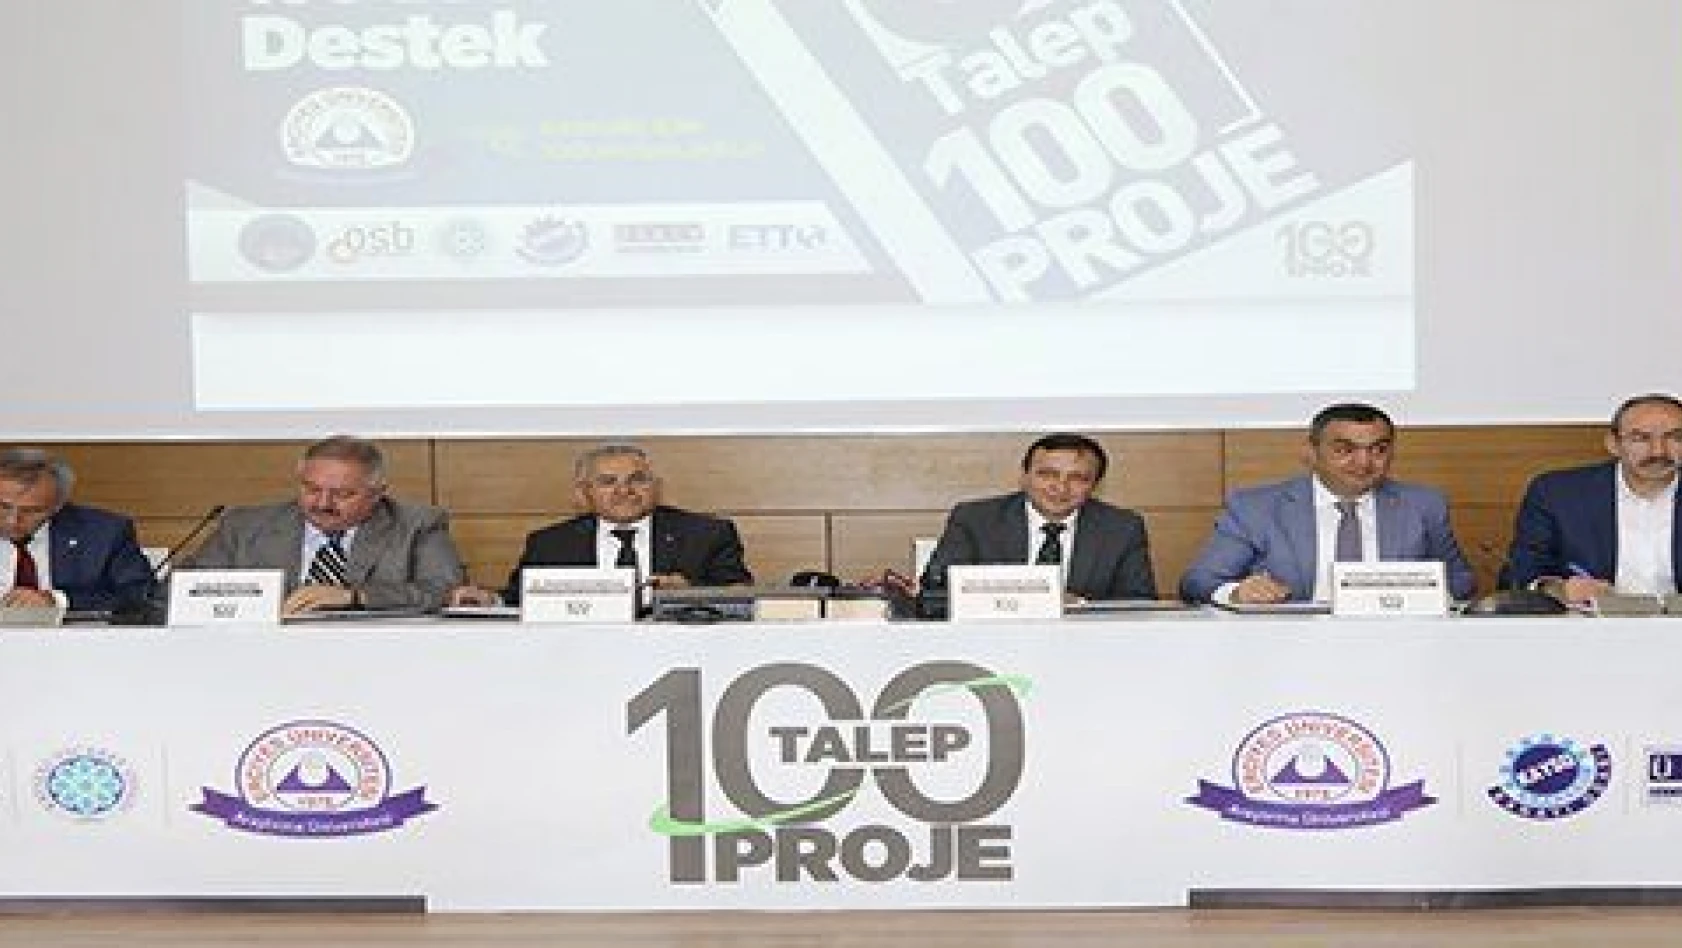 ERÜ'den Kayseri Sanayisine, Ticaretine ve Belediyelere 100'de 100 Proje Desteği